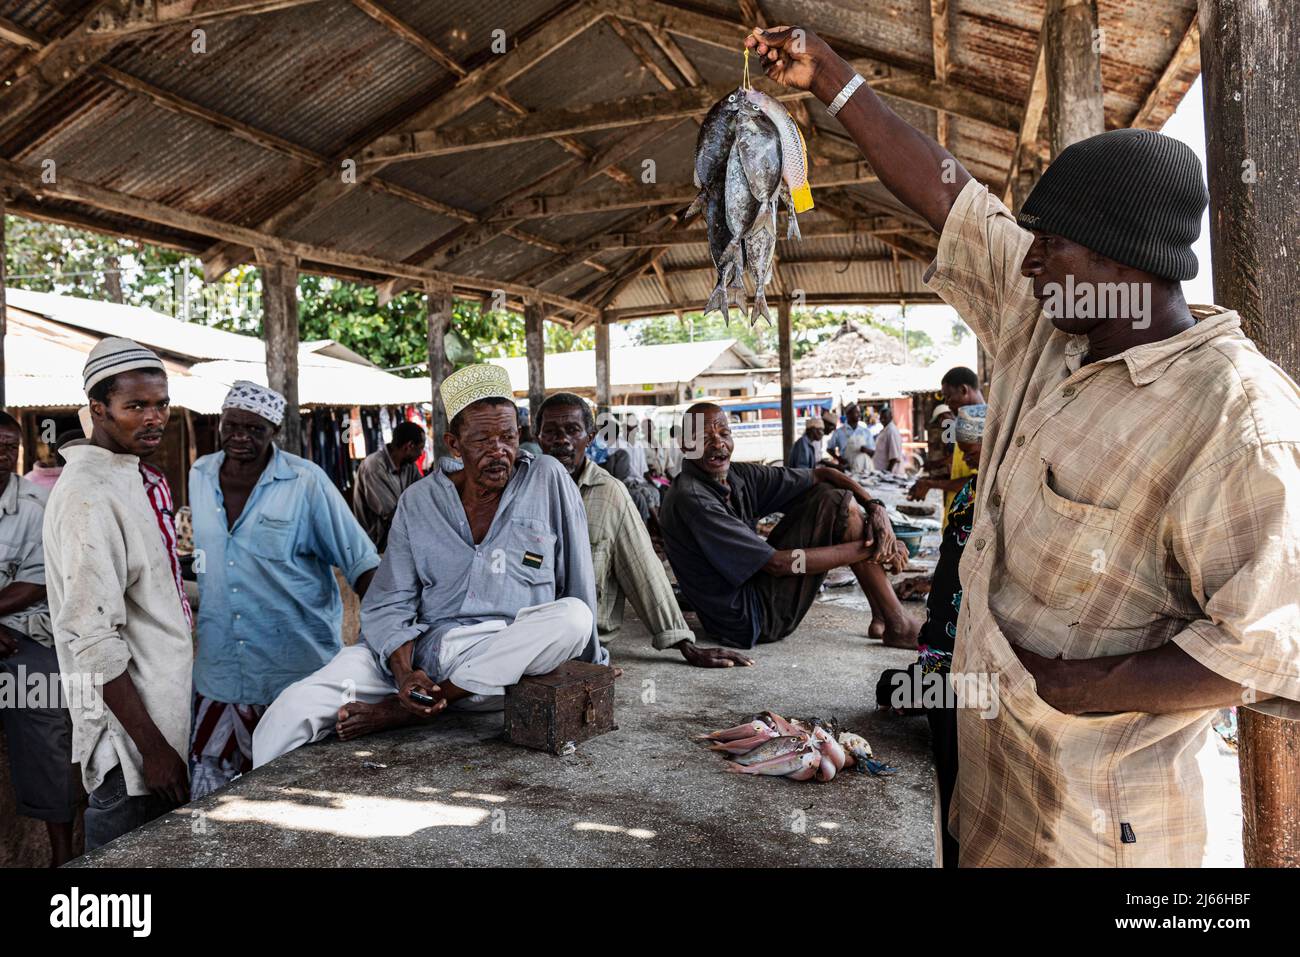 Mann verkauft Fische, Kunden, Fischmarkt in Mkokotoni, Unguja, Sansibar, Tansania Foto Stock